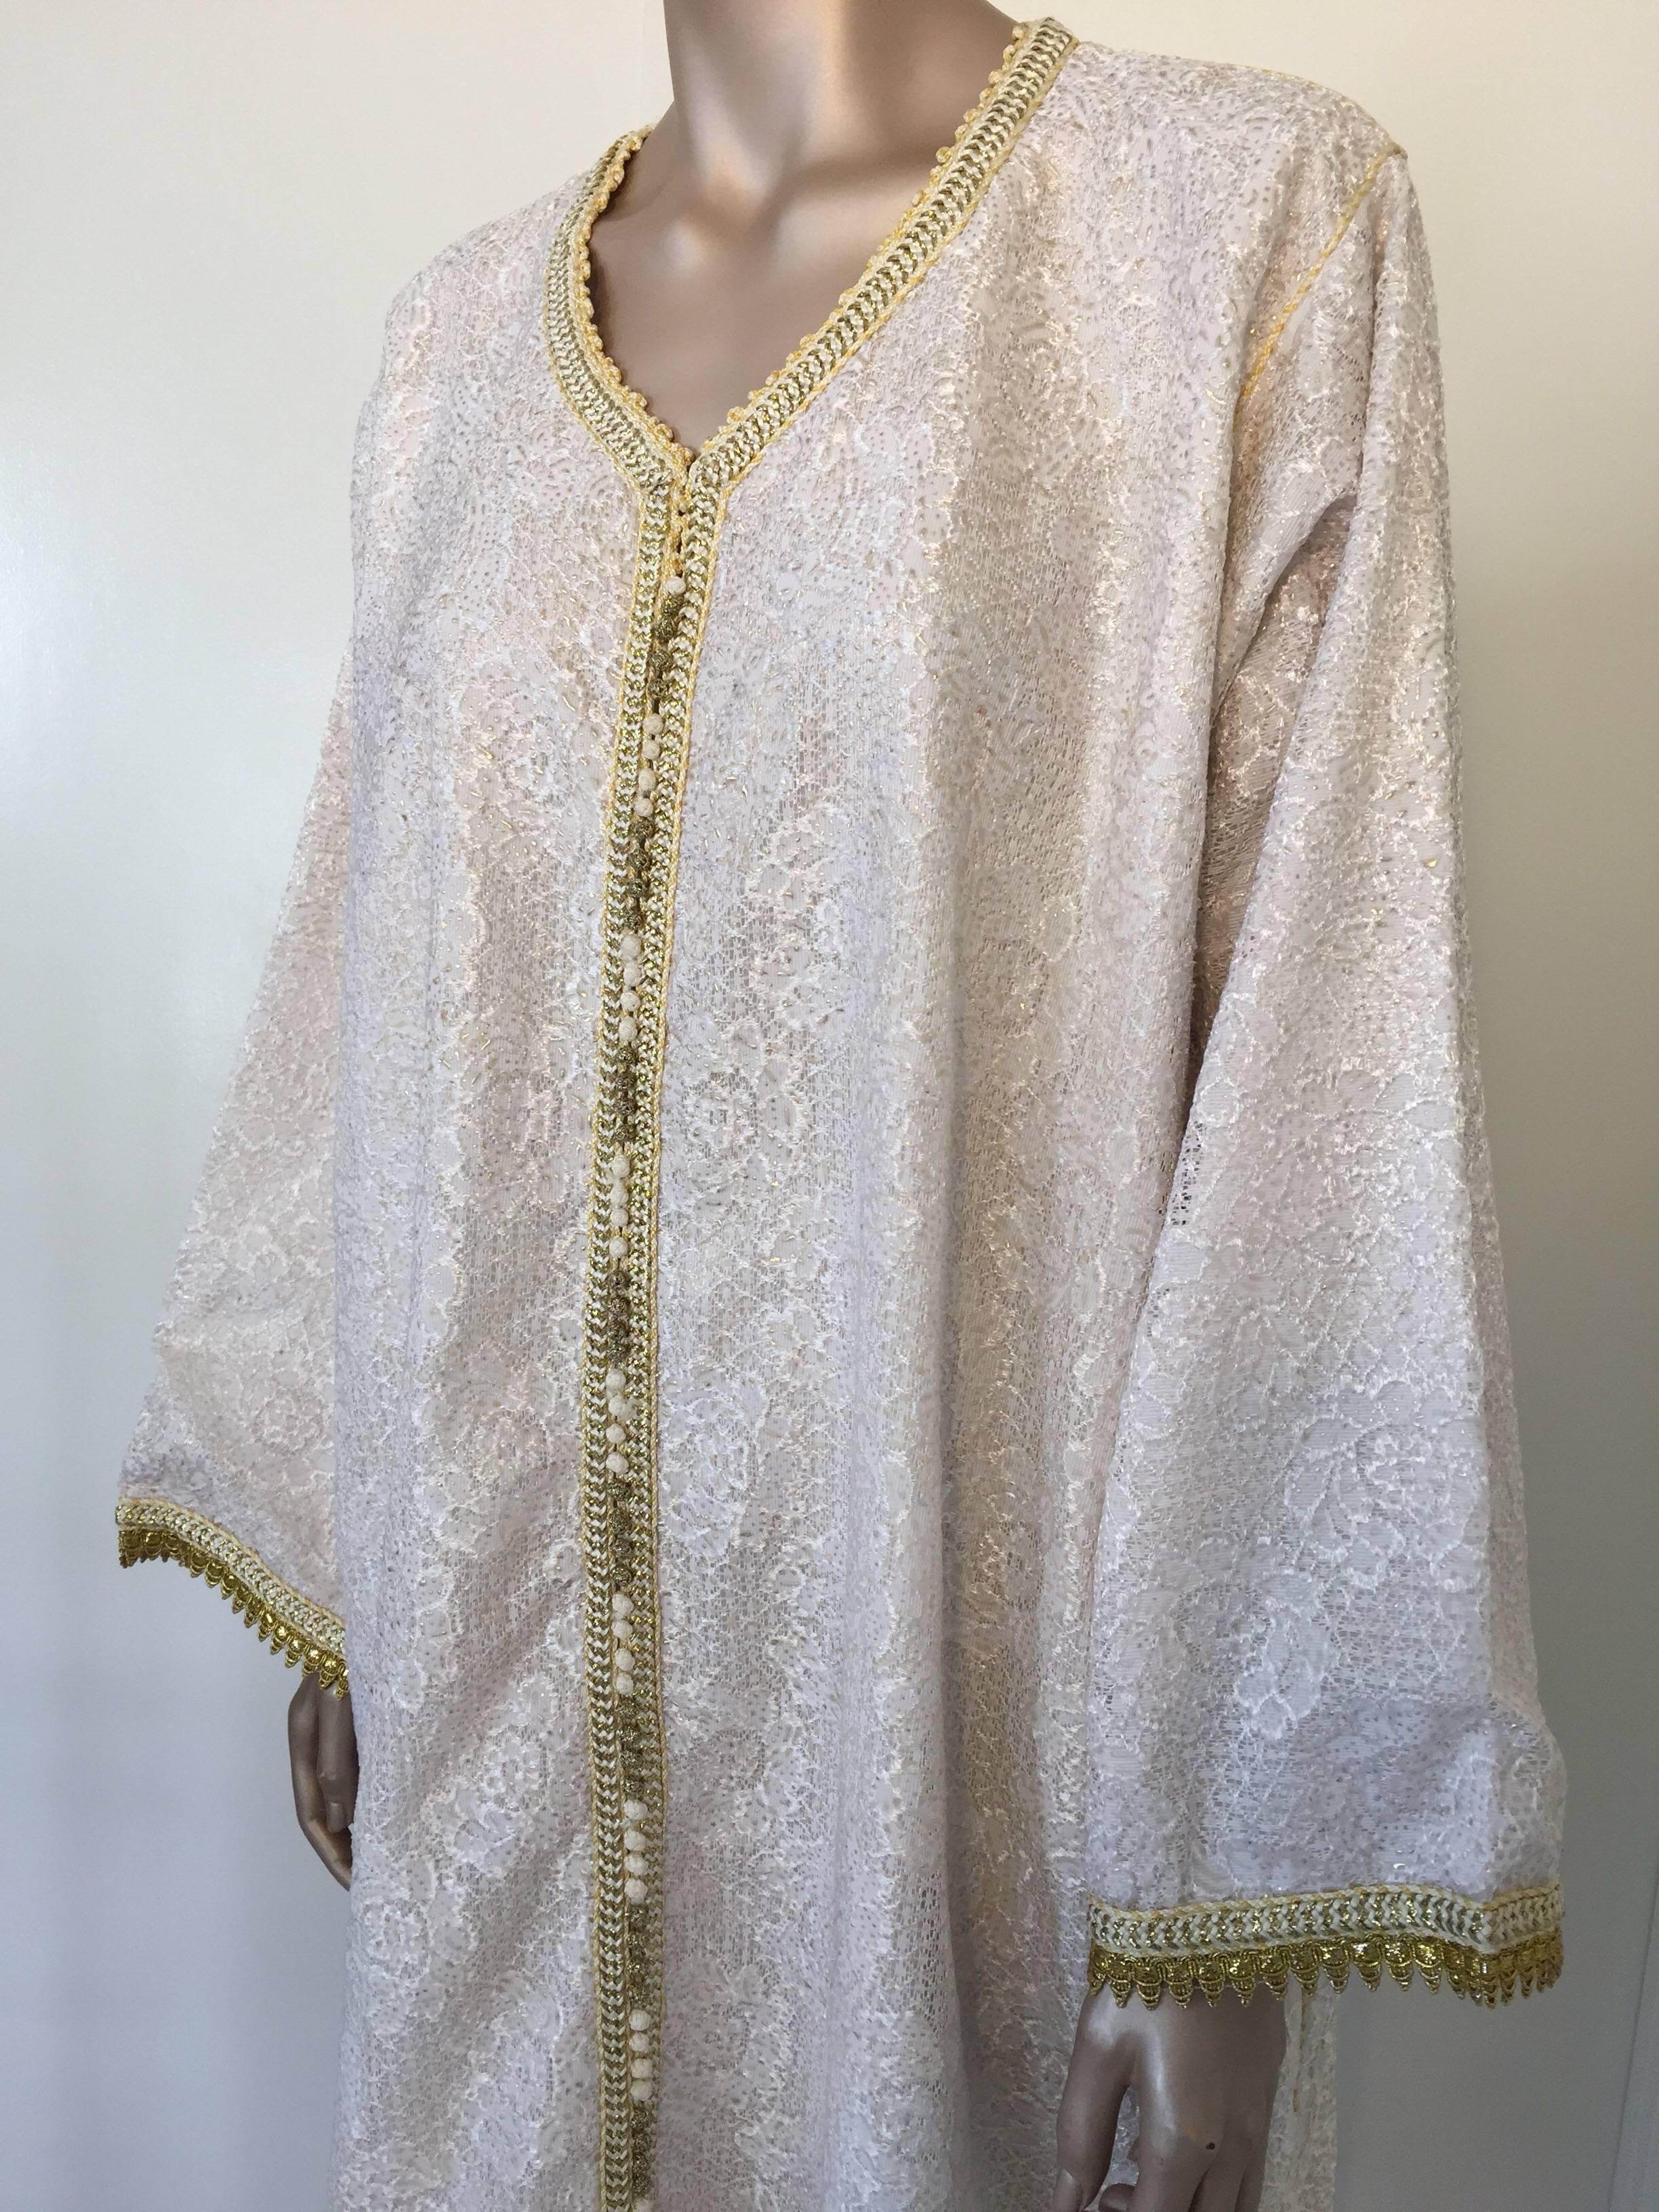 Caftan marocain, robe de soirée ou caftan intérieur en dentelle blanche et or avec bordure dorée.
Robe caftan vintage exotique blanche et or métallisée faite à la main, caftan de cérémonie caftan d'Afrique du Nord, Maroc, années 1970.
Le lumineux